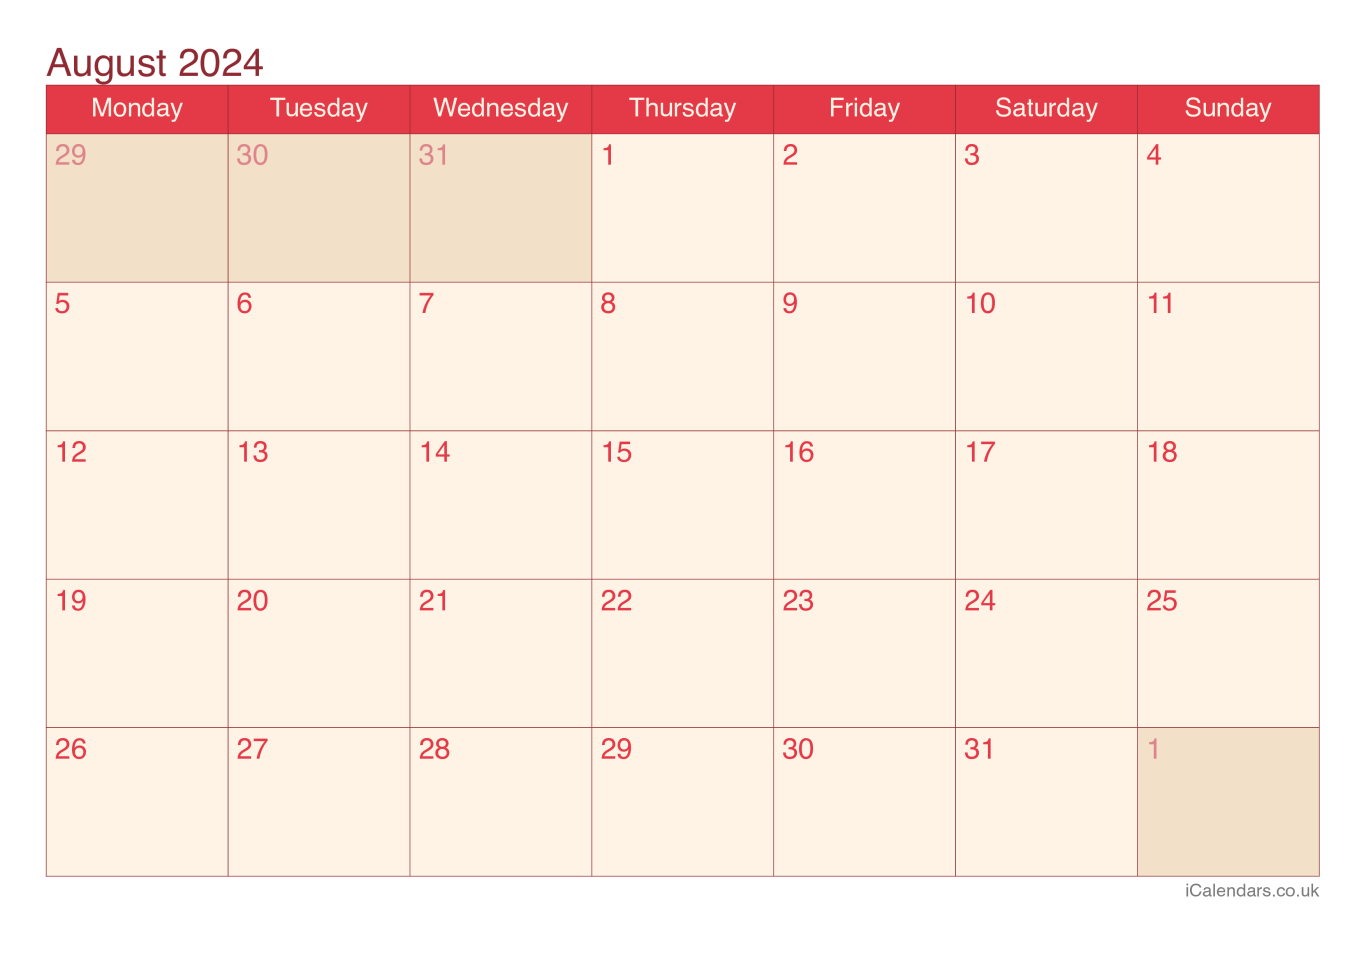 Calendar August 2024 - Cherry